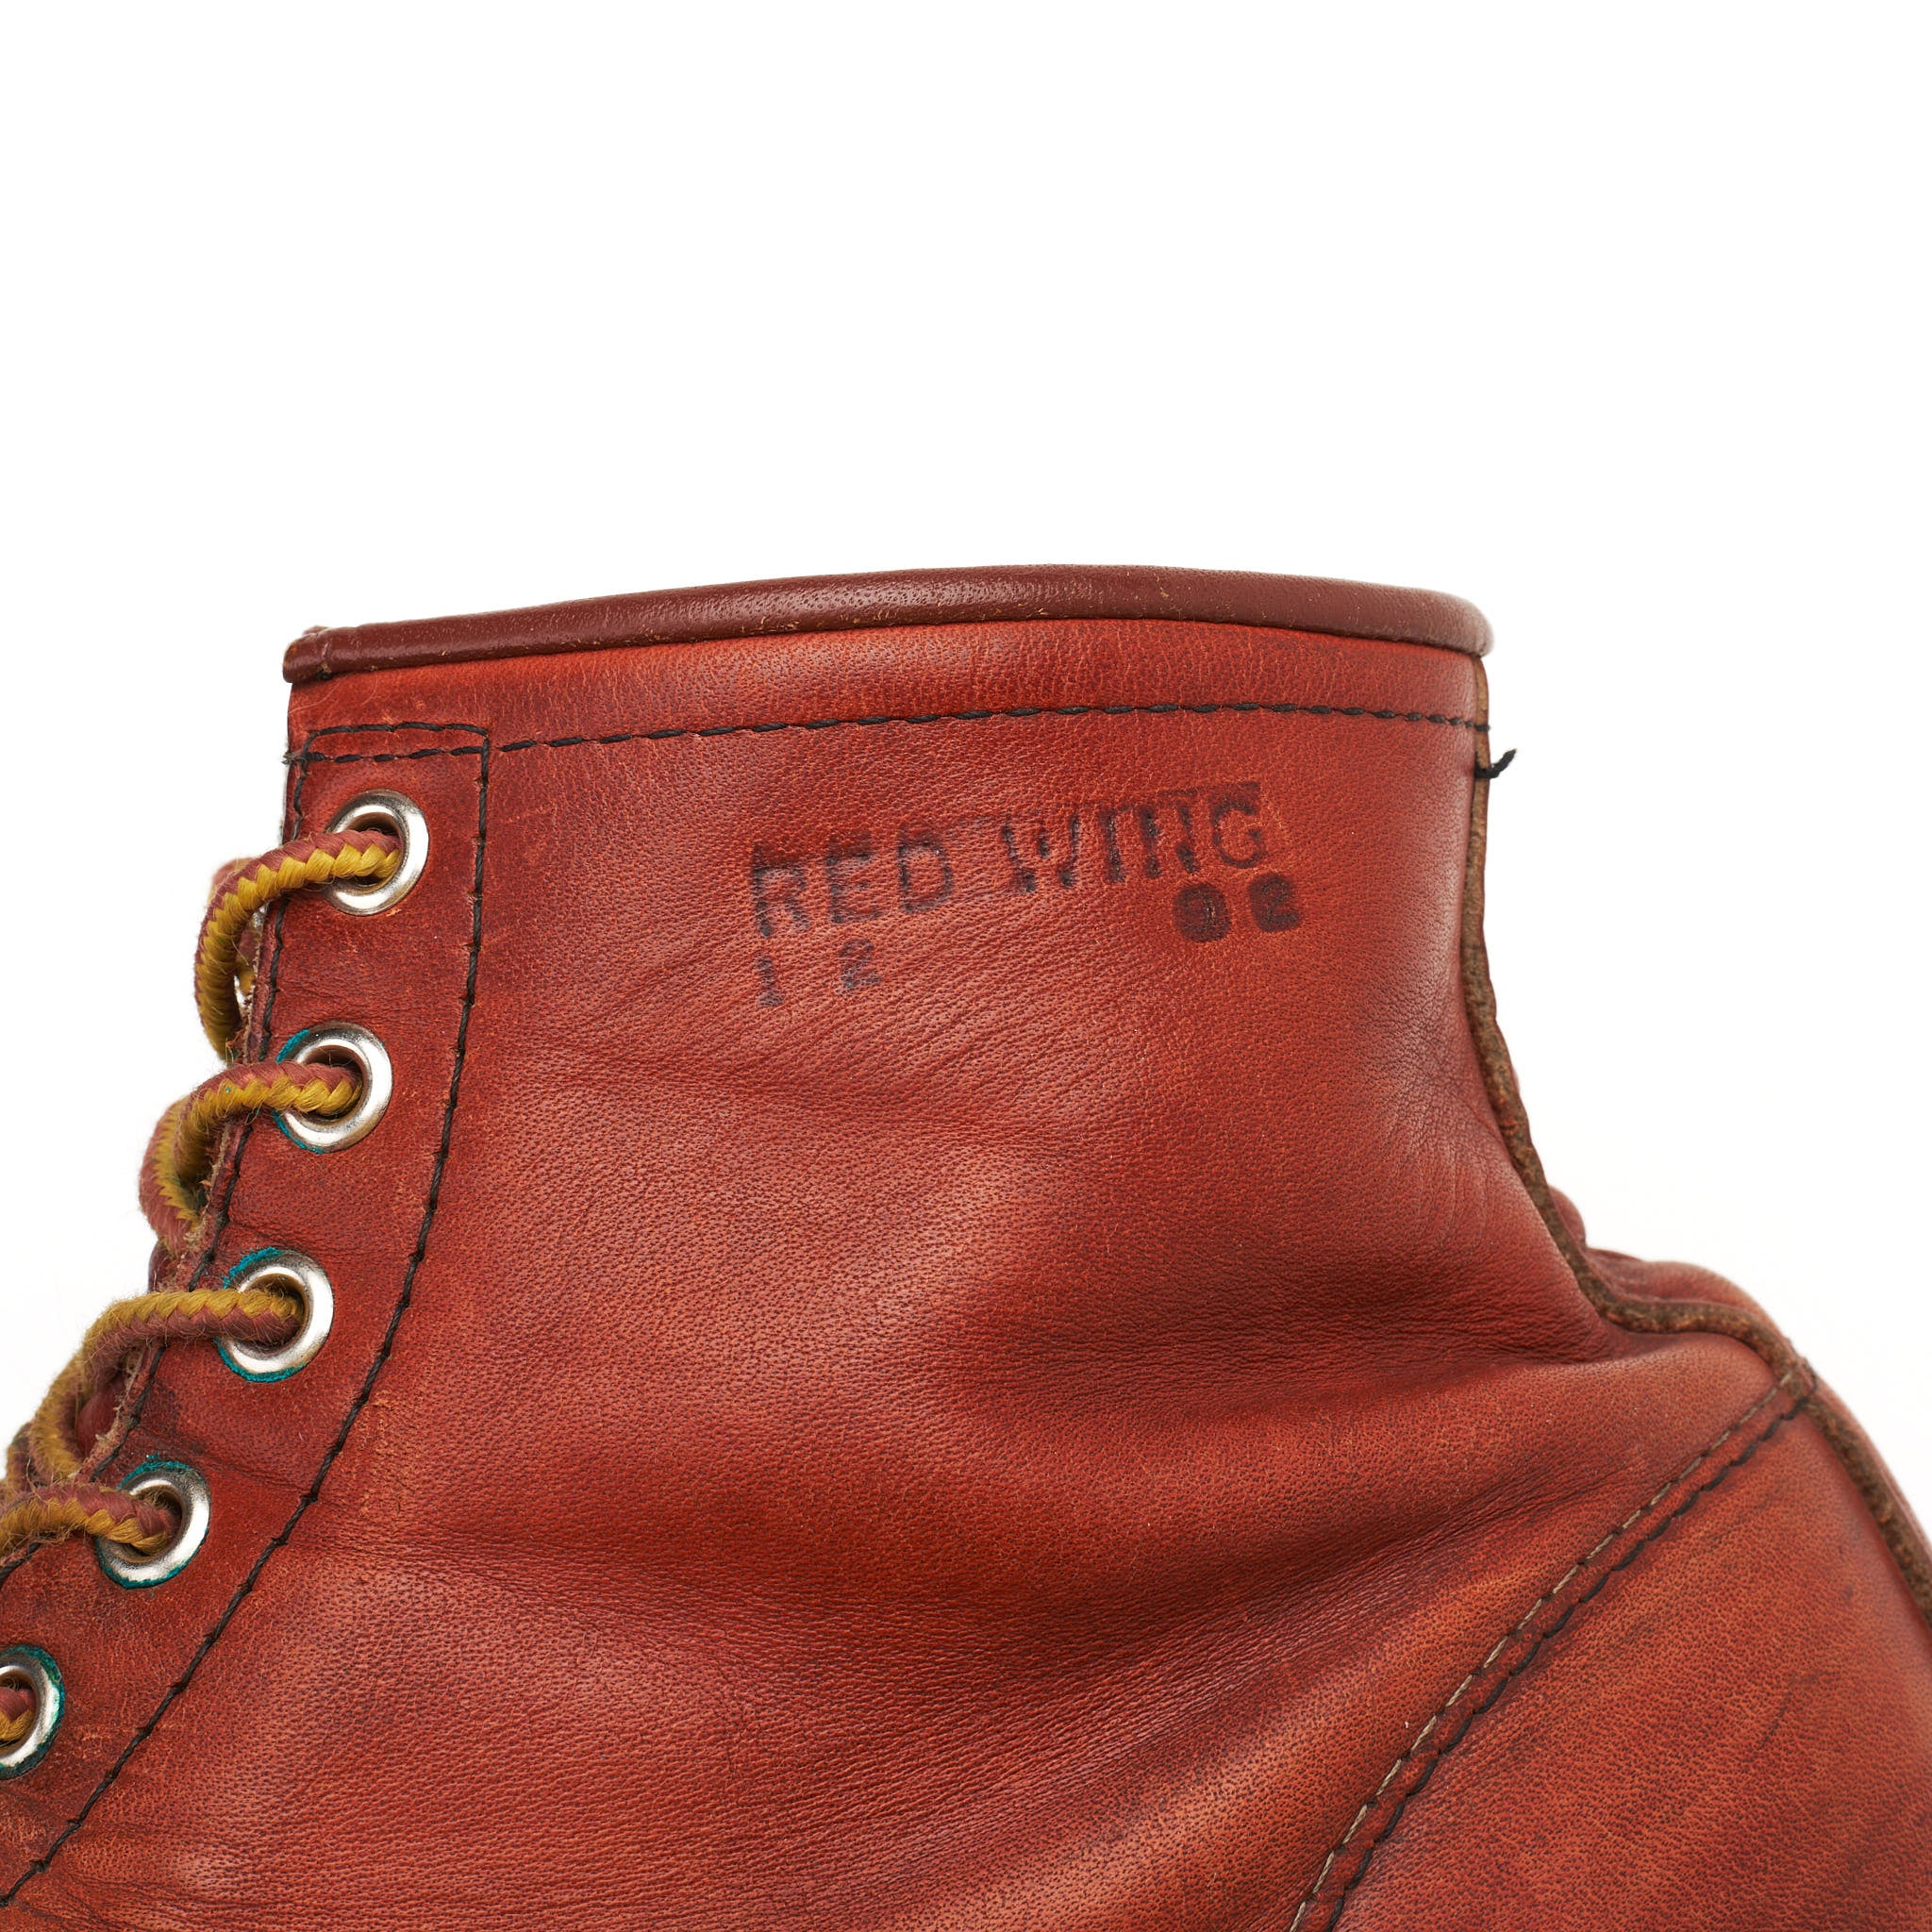 RED WING 875 8175 IRISH SETTER Moc Toe Vintage Vibram Sole Boots US 11 E 1992